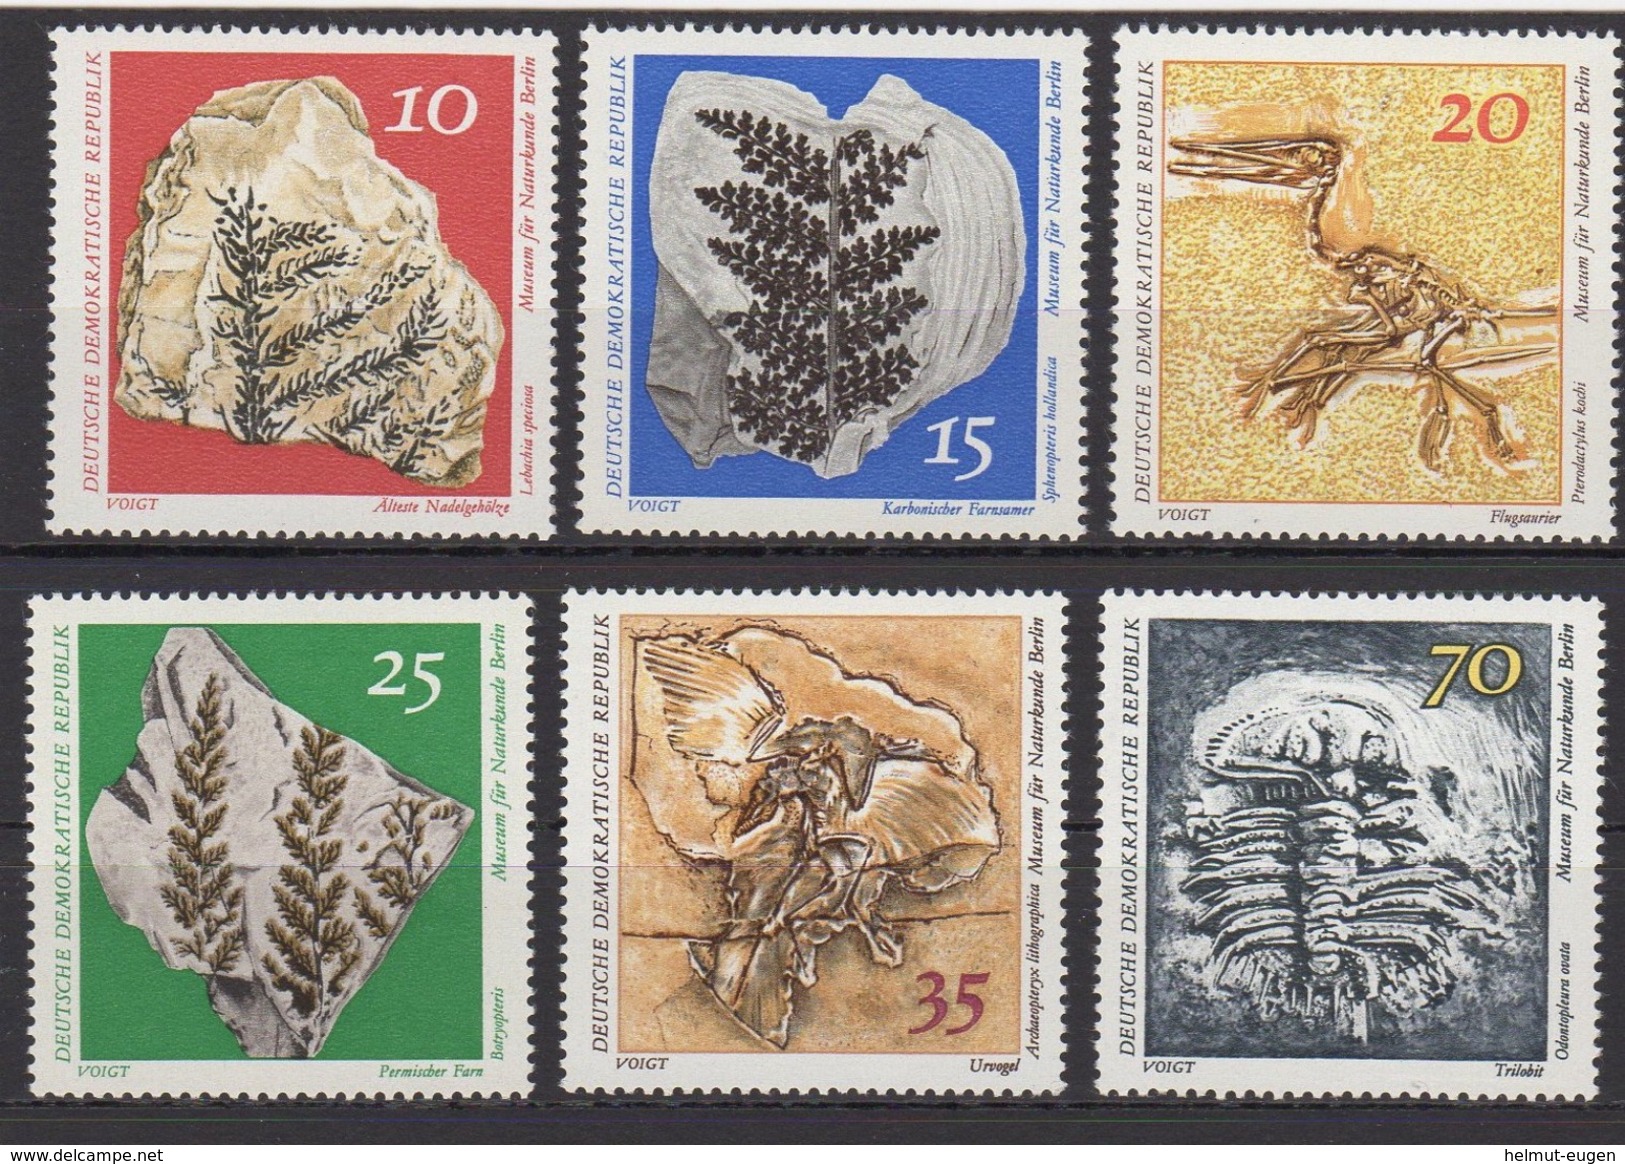 MiNr. 1822 - 1827 Deutschland Deutsche Demokratische Republik    1973, 6. Febr. Museum Für Naturkunde, Berlin - Unused Stamps